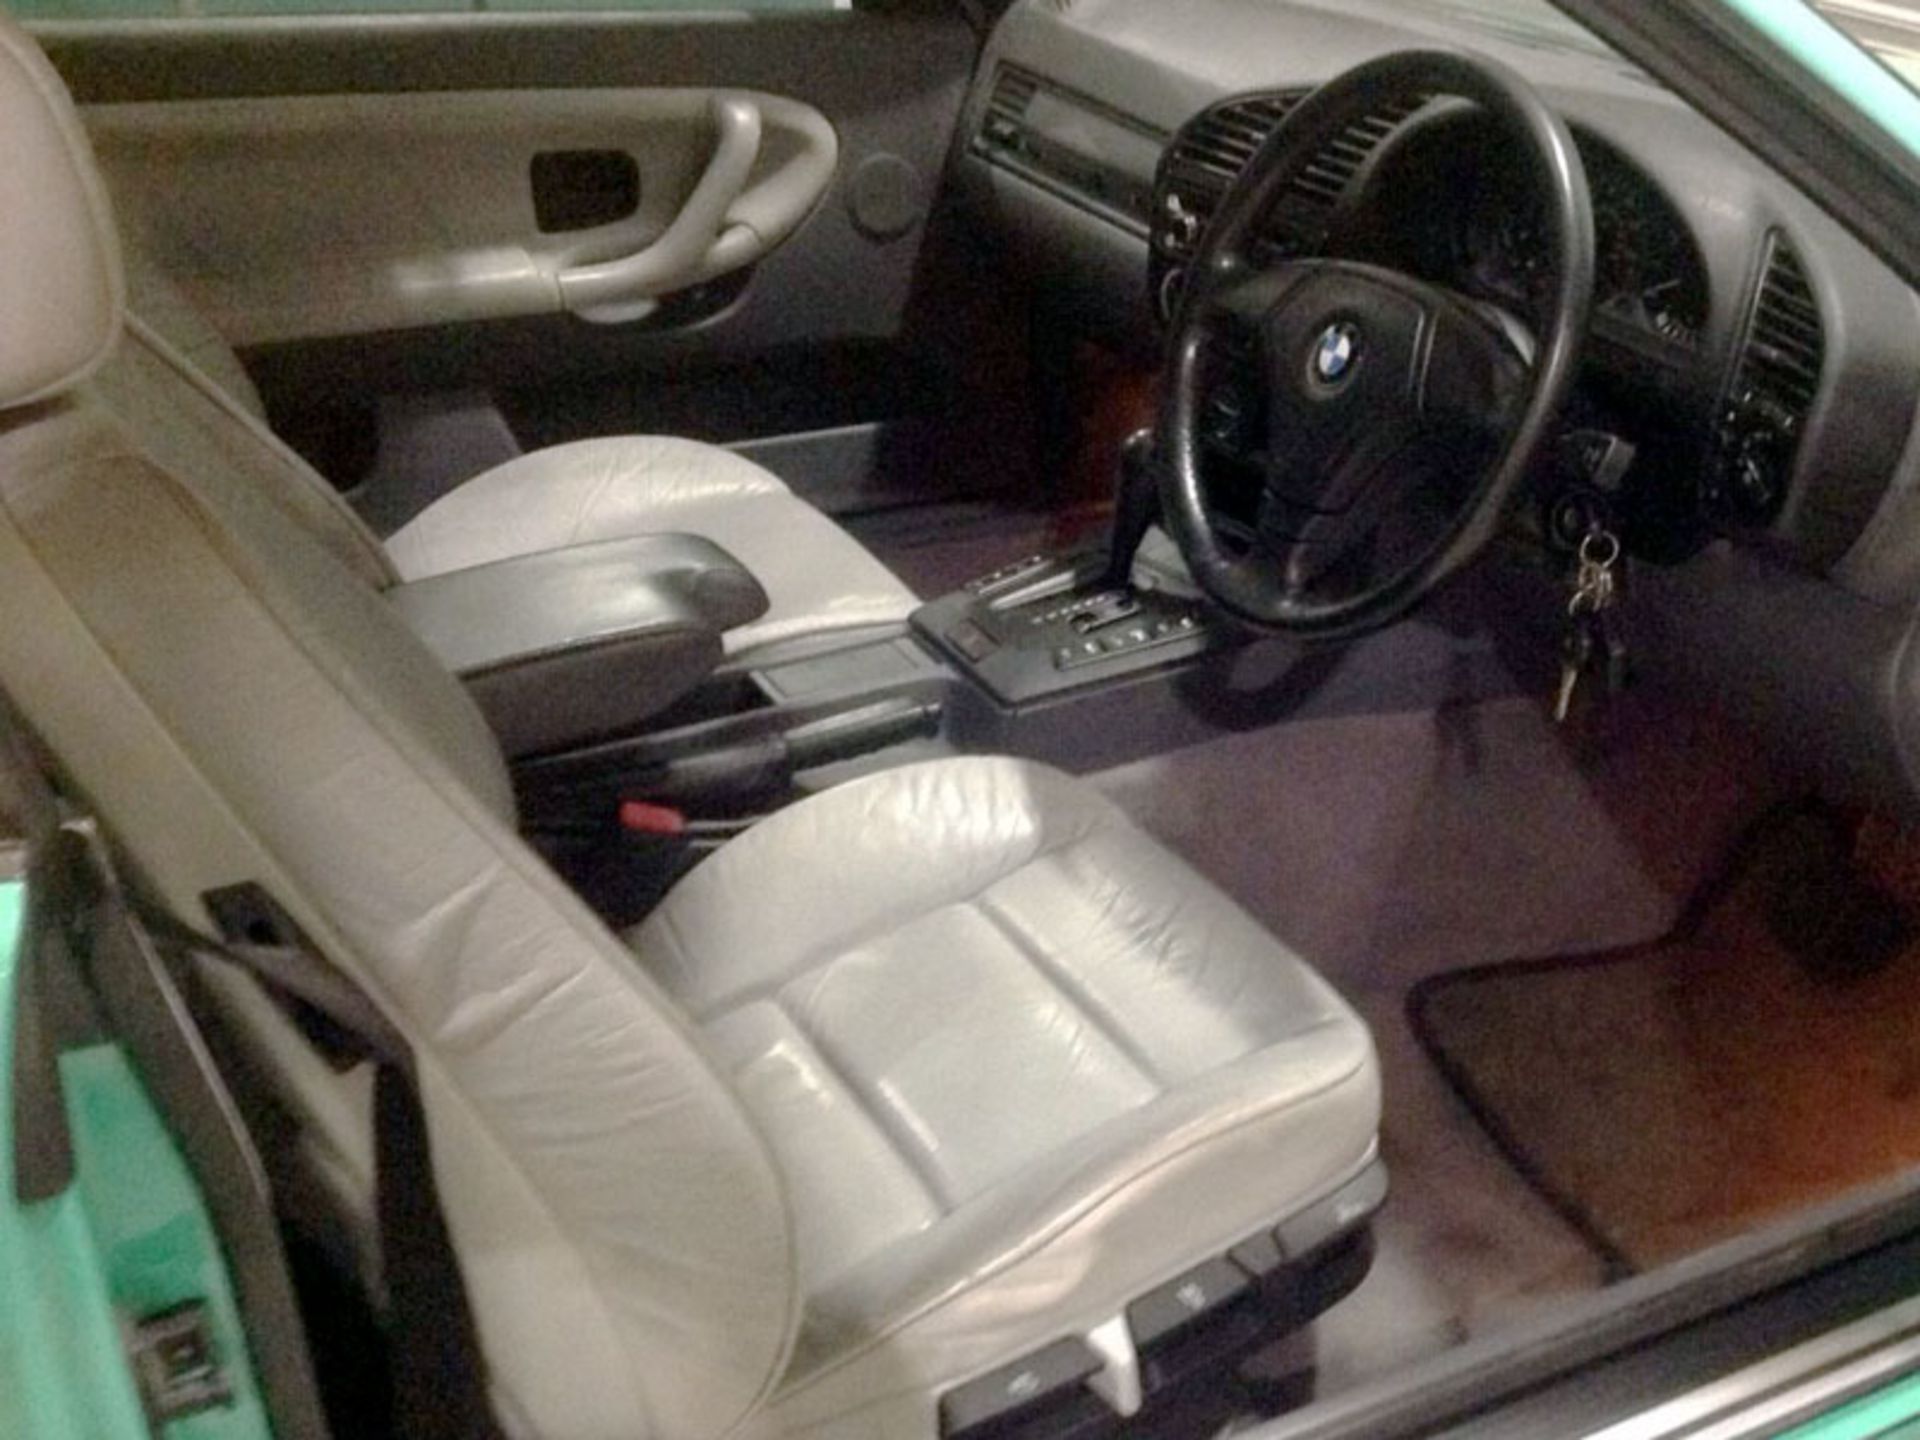 1998 BMW 323i Cabriolet - Image 2 of 4